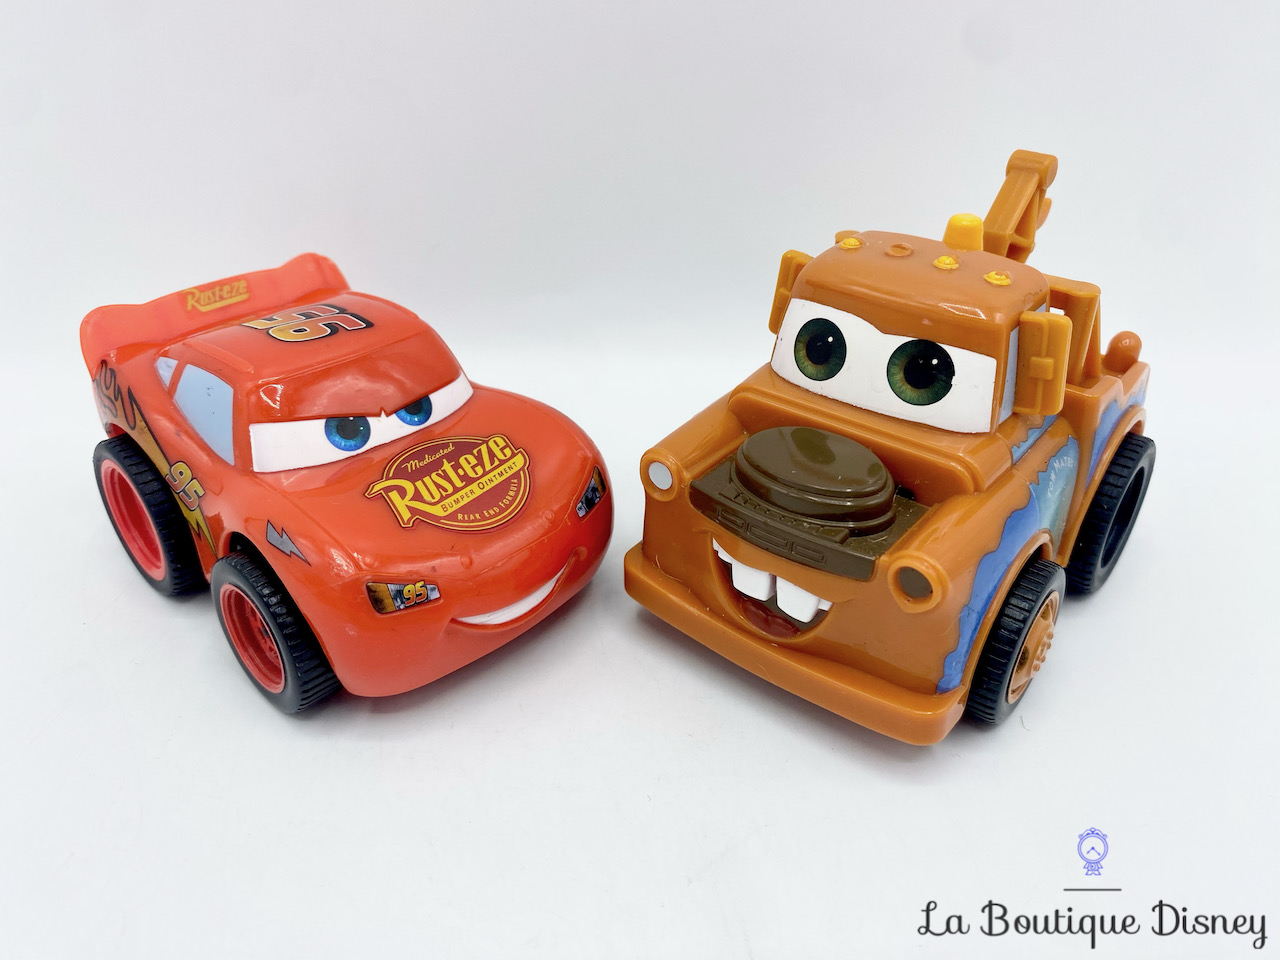 Supercar Enfants Voiture Toy Monster Truck Friction Car